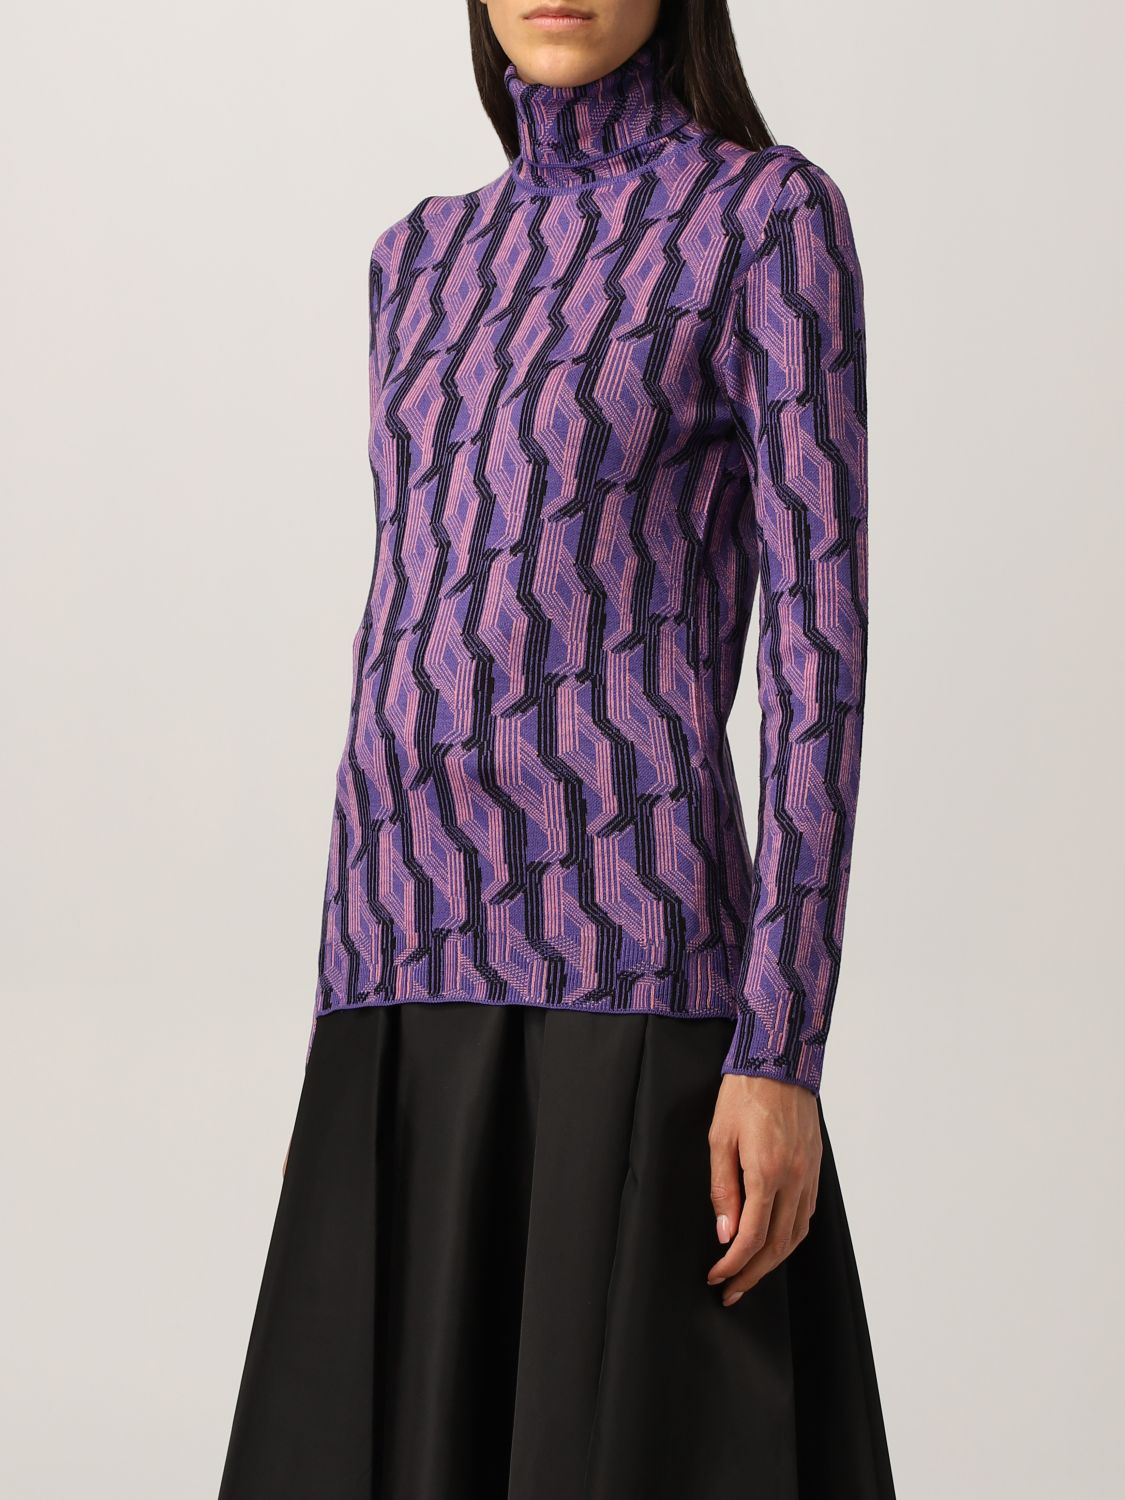 Jersey Prada: Jersey de cuello alto de Prada en lana virgen estampada violeta 4